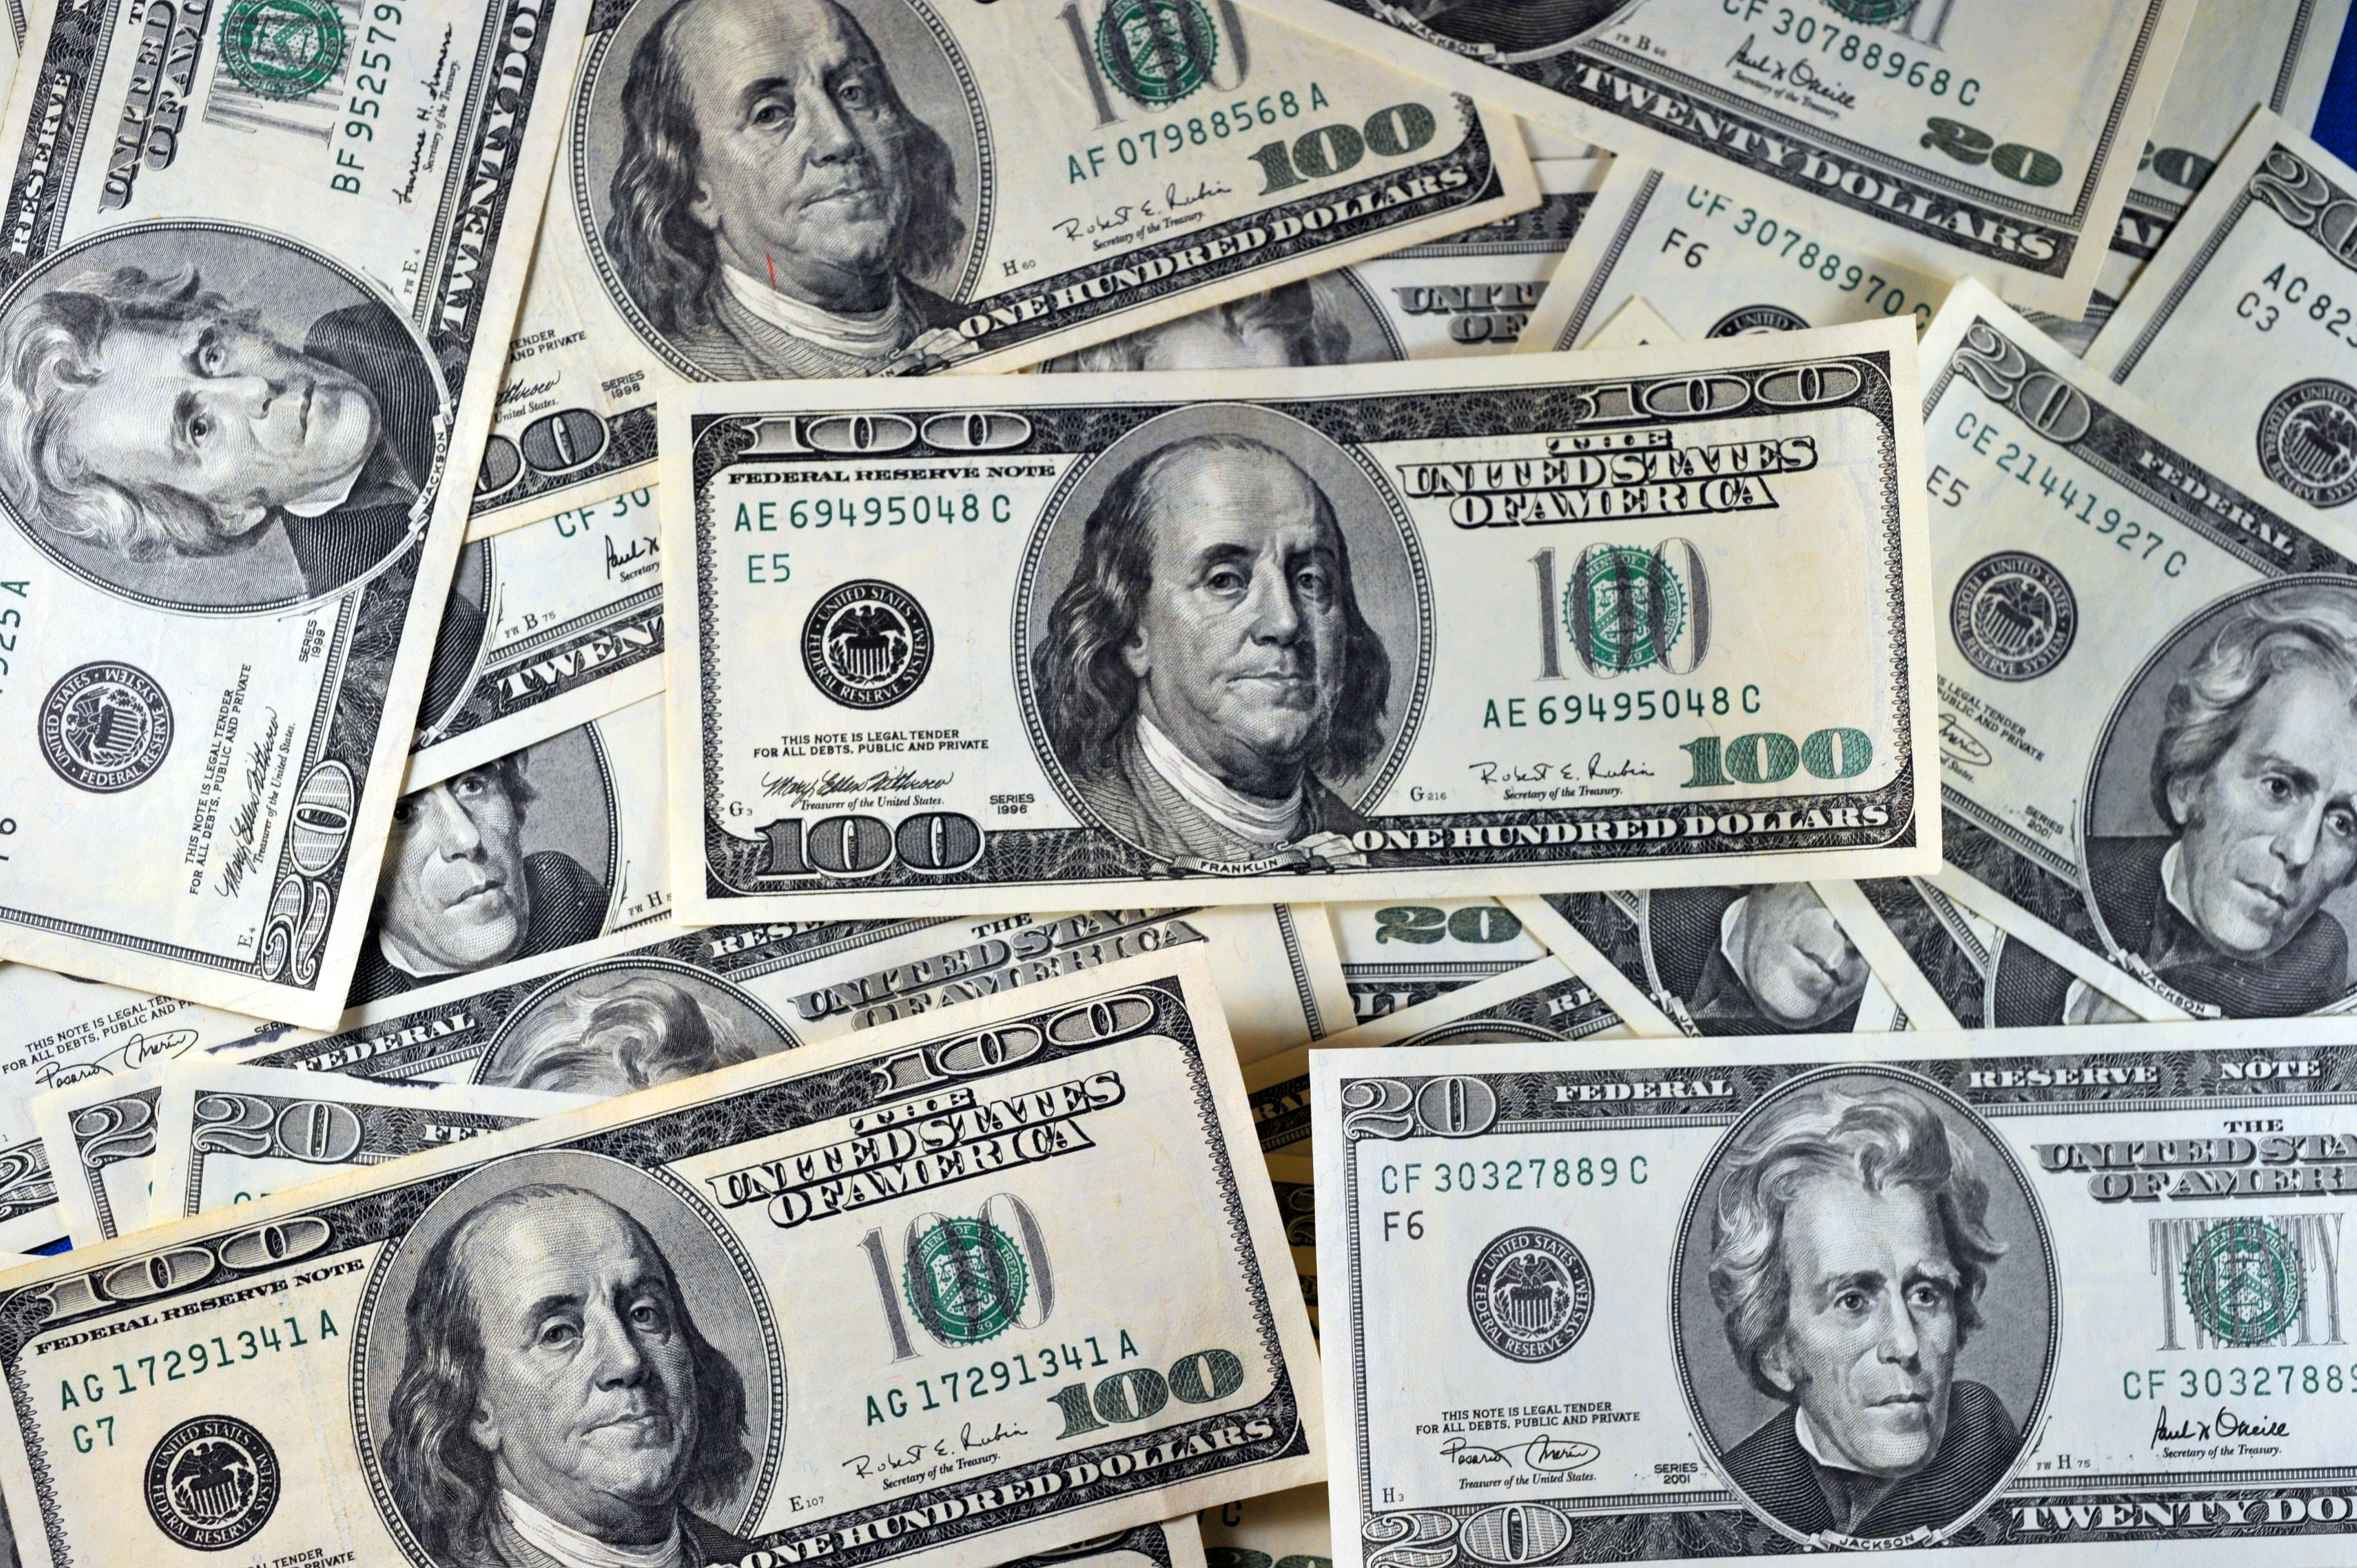 US currency is seeen in this January 30, 2011 photo in Manassas, VA. AFP PHOTO/Karen BLEIER / AFP PHOTO / KAREN BLEIER